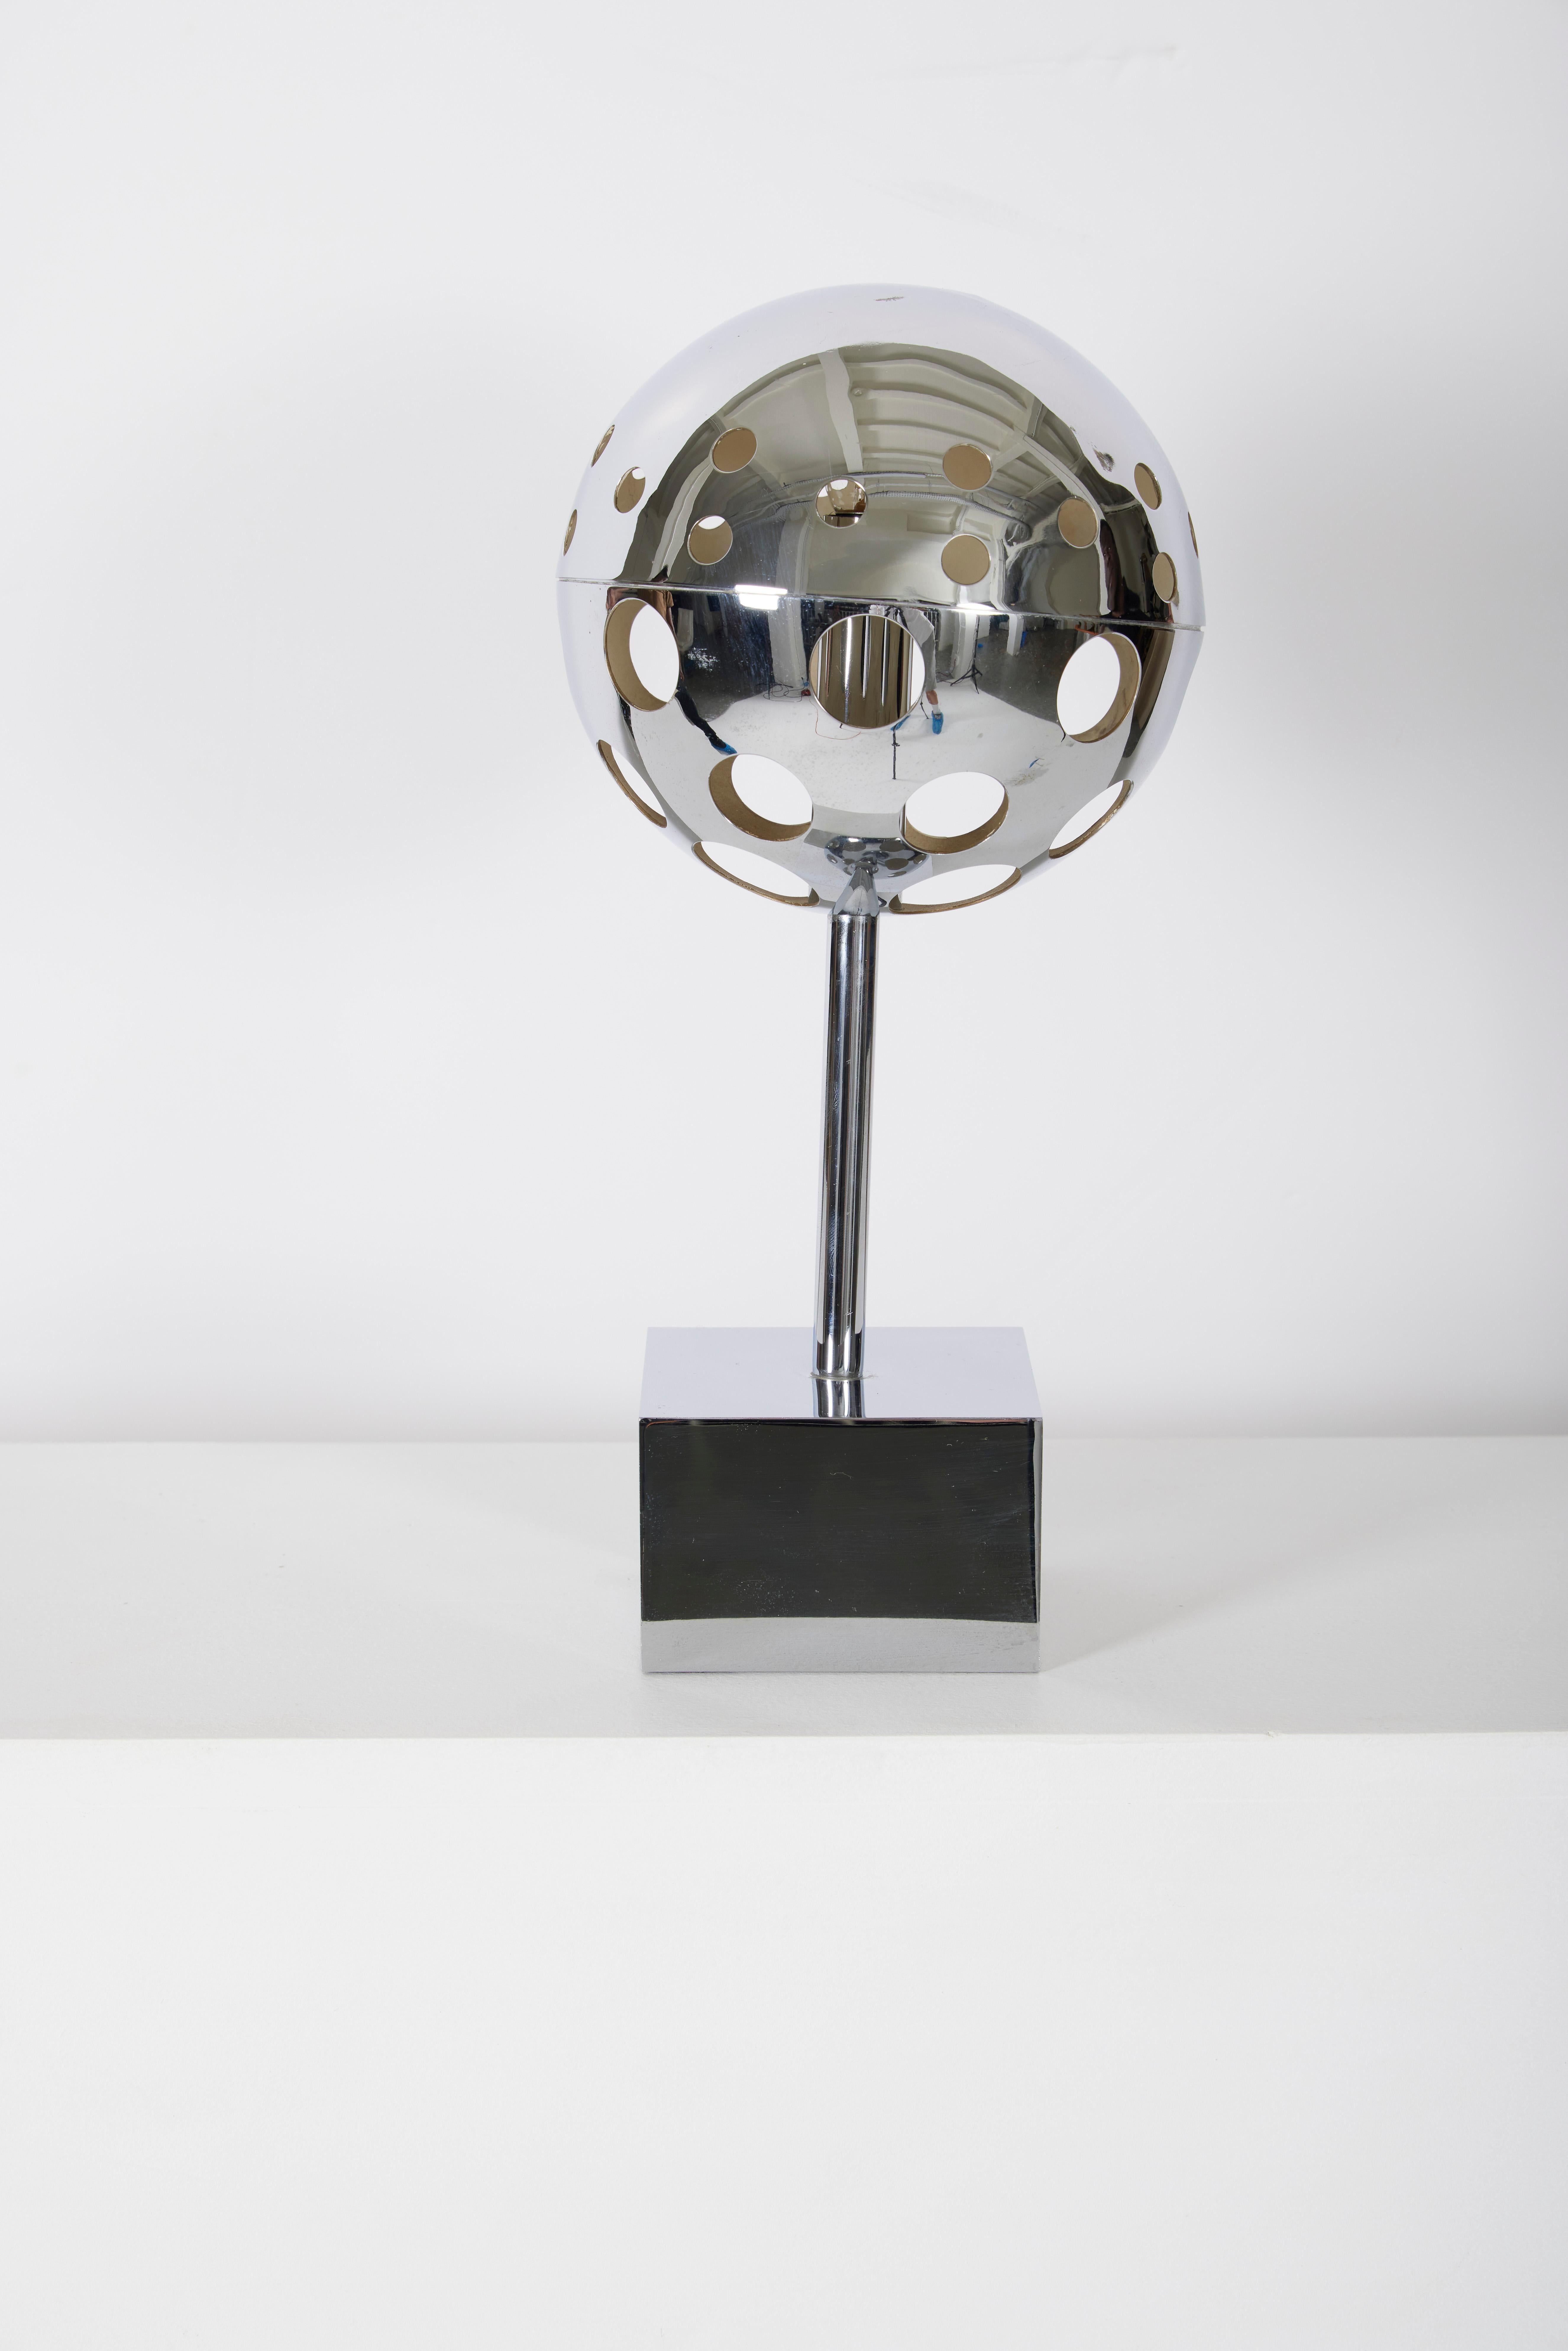 Lampe 10367 de Sabin Charoy, éditée par Verre Lumière, années 1970. Lampe de table en métal chromé, avec une sphère ajourée sur une base cubique. Fonctionnel.
LP1107